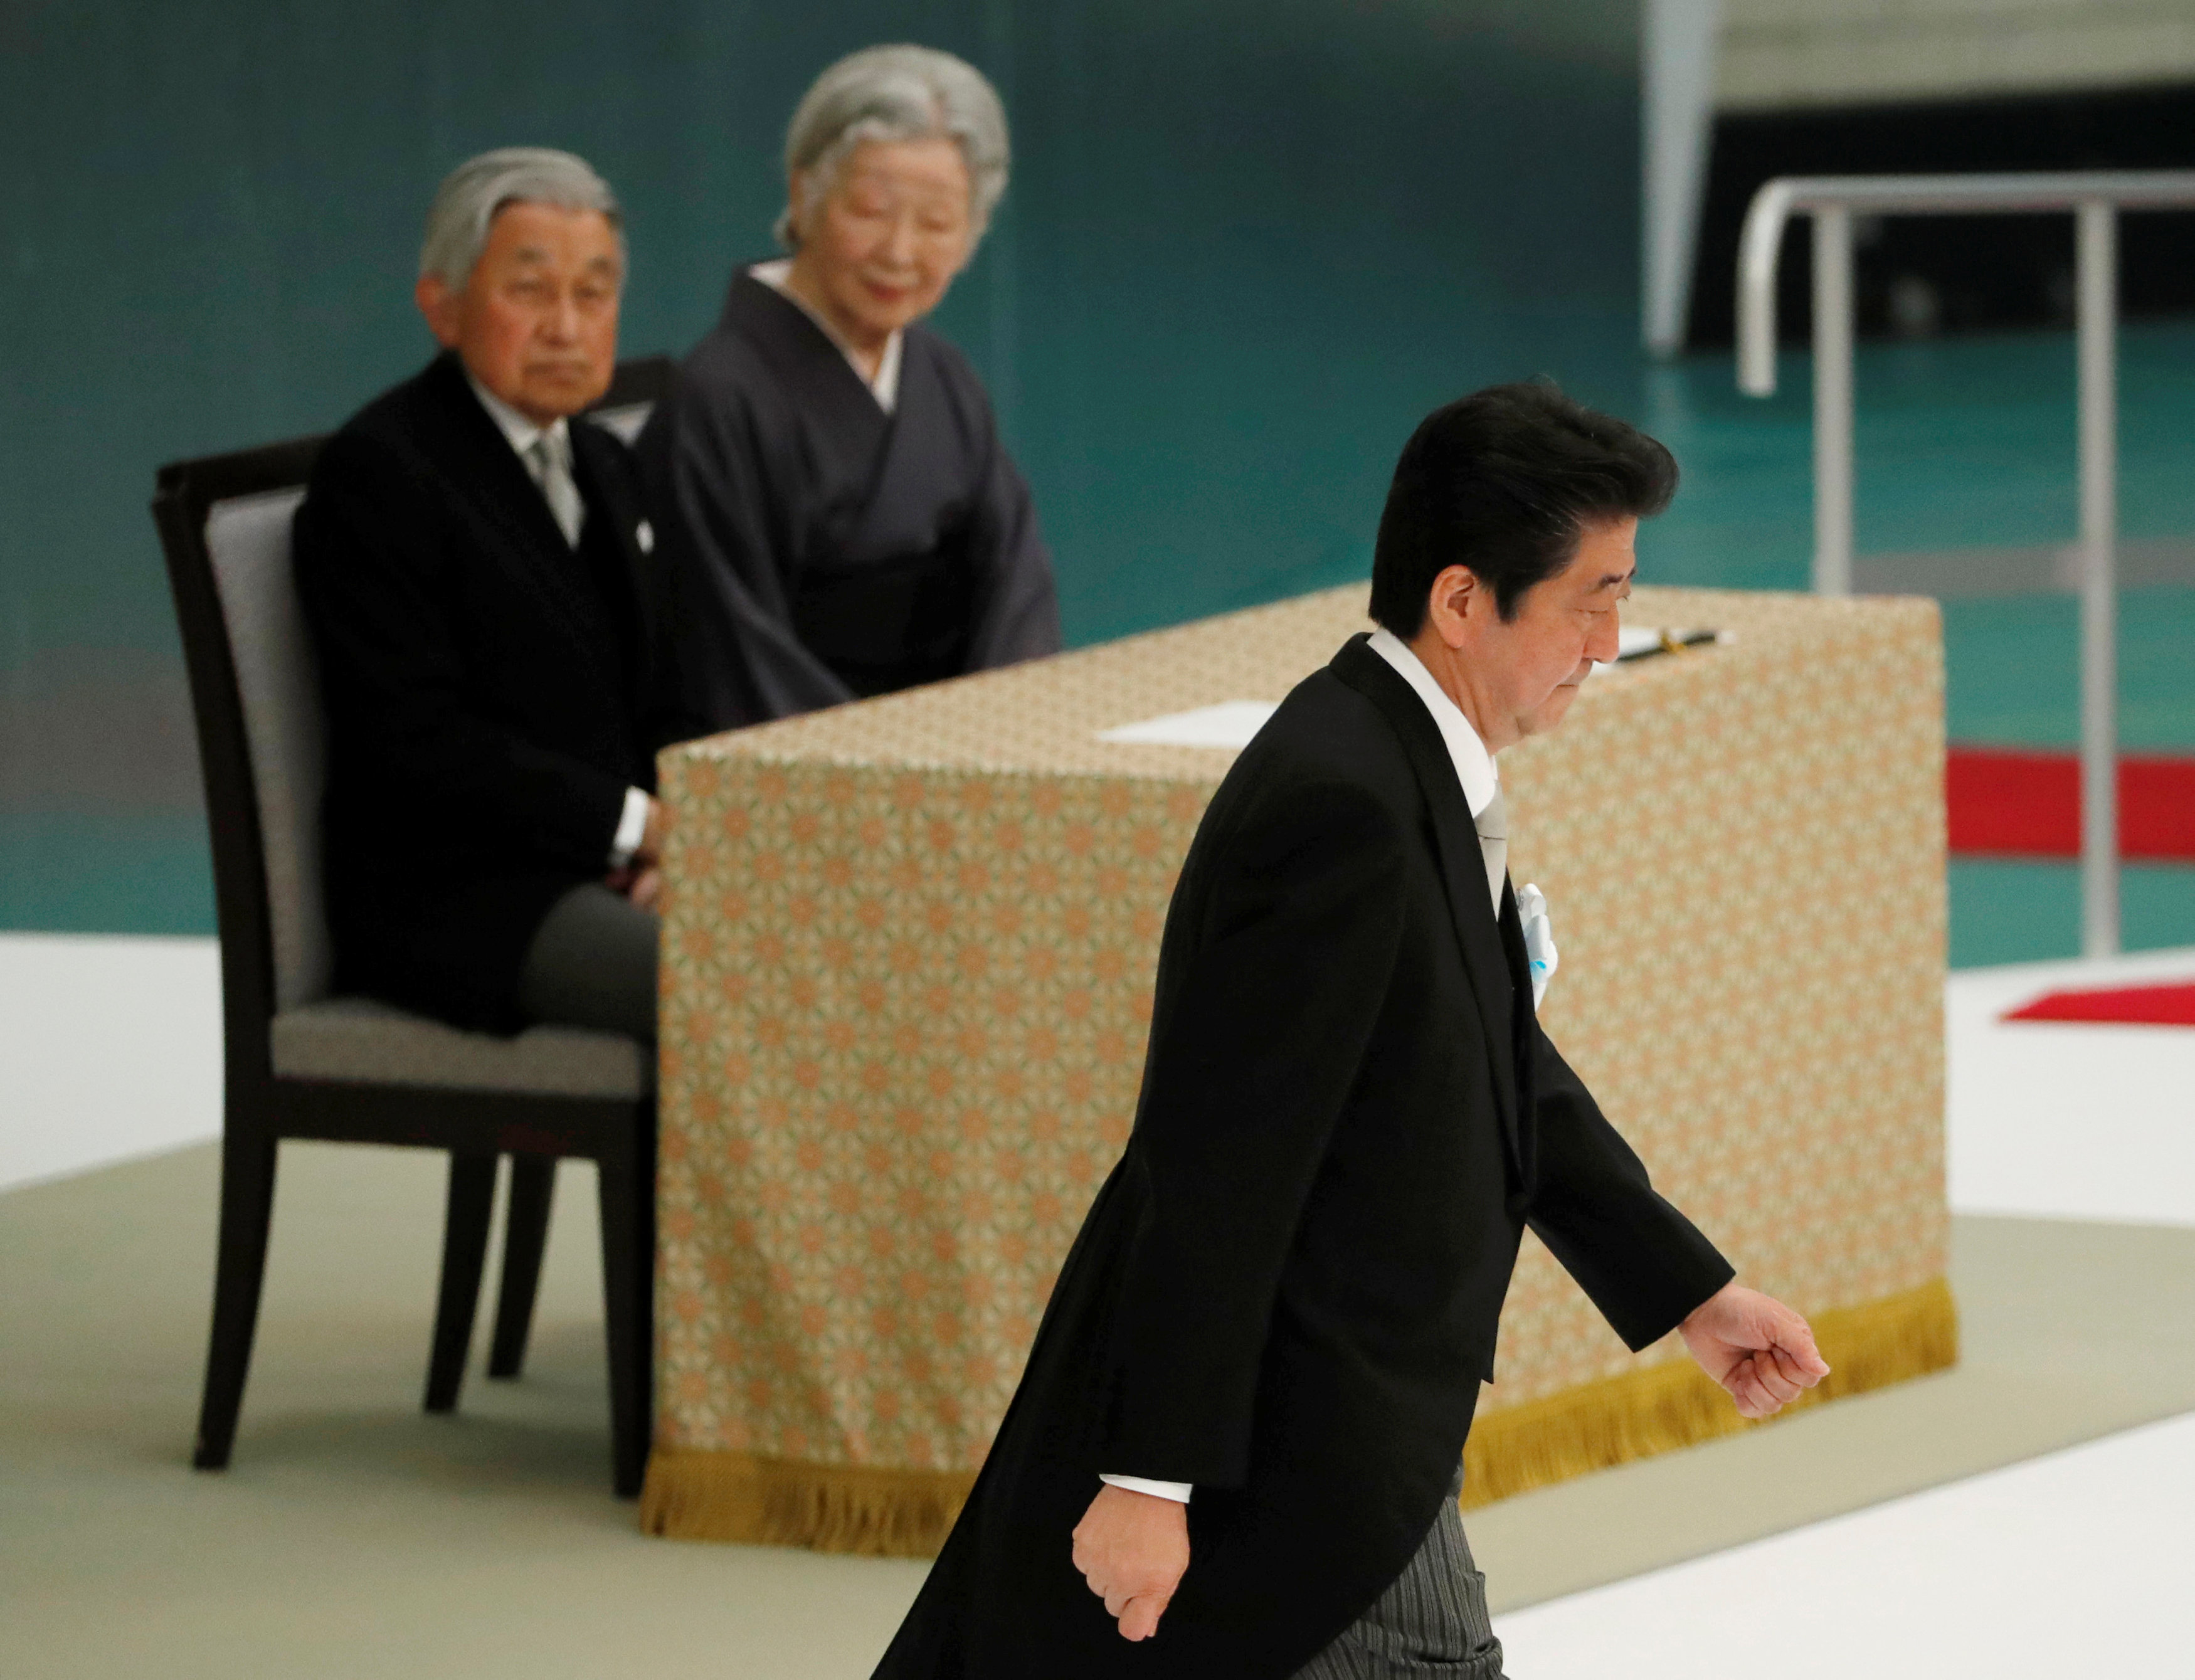         رئيس الوزراء اليابانى وامبراطور اليابان 